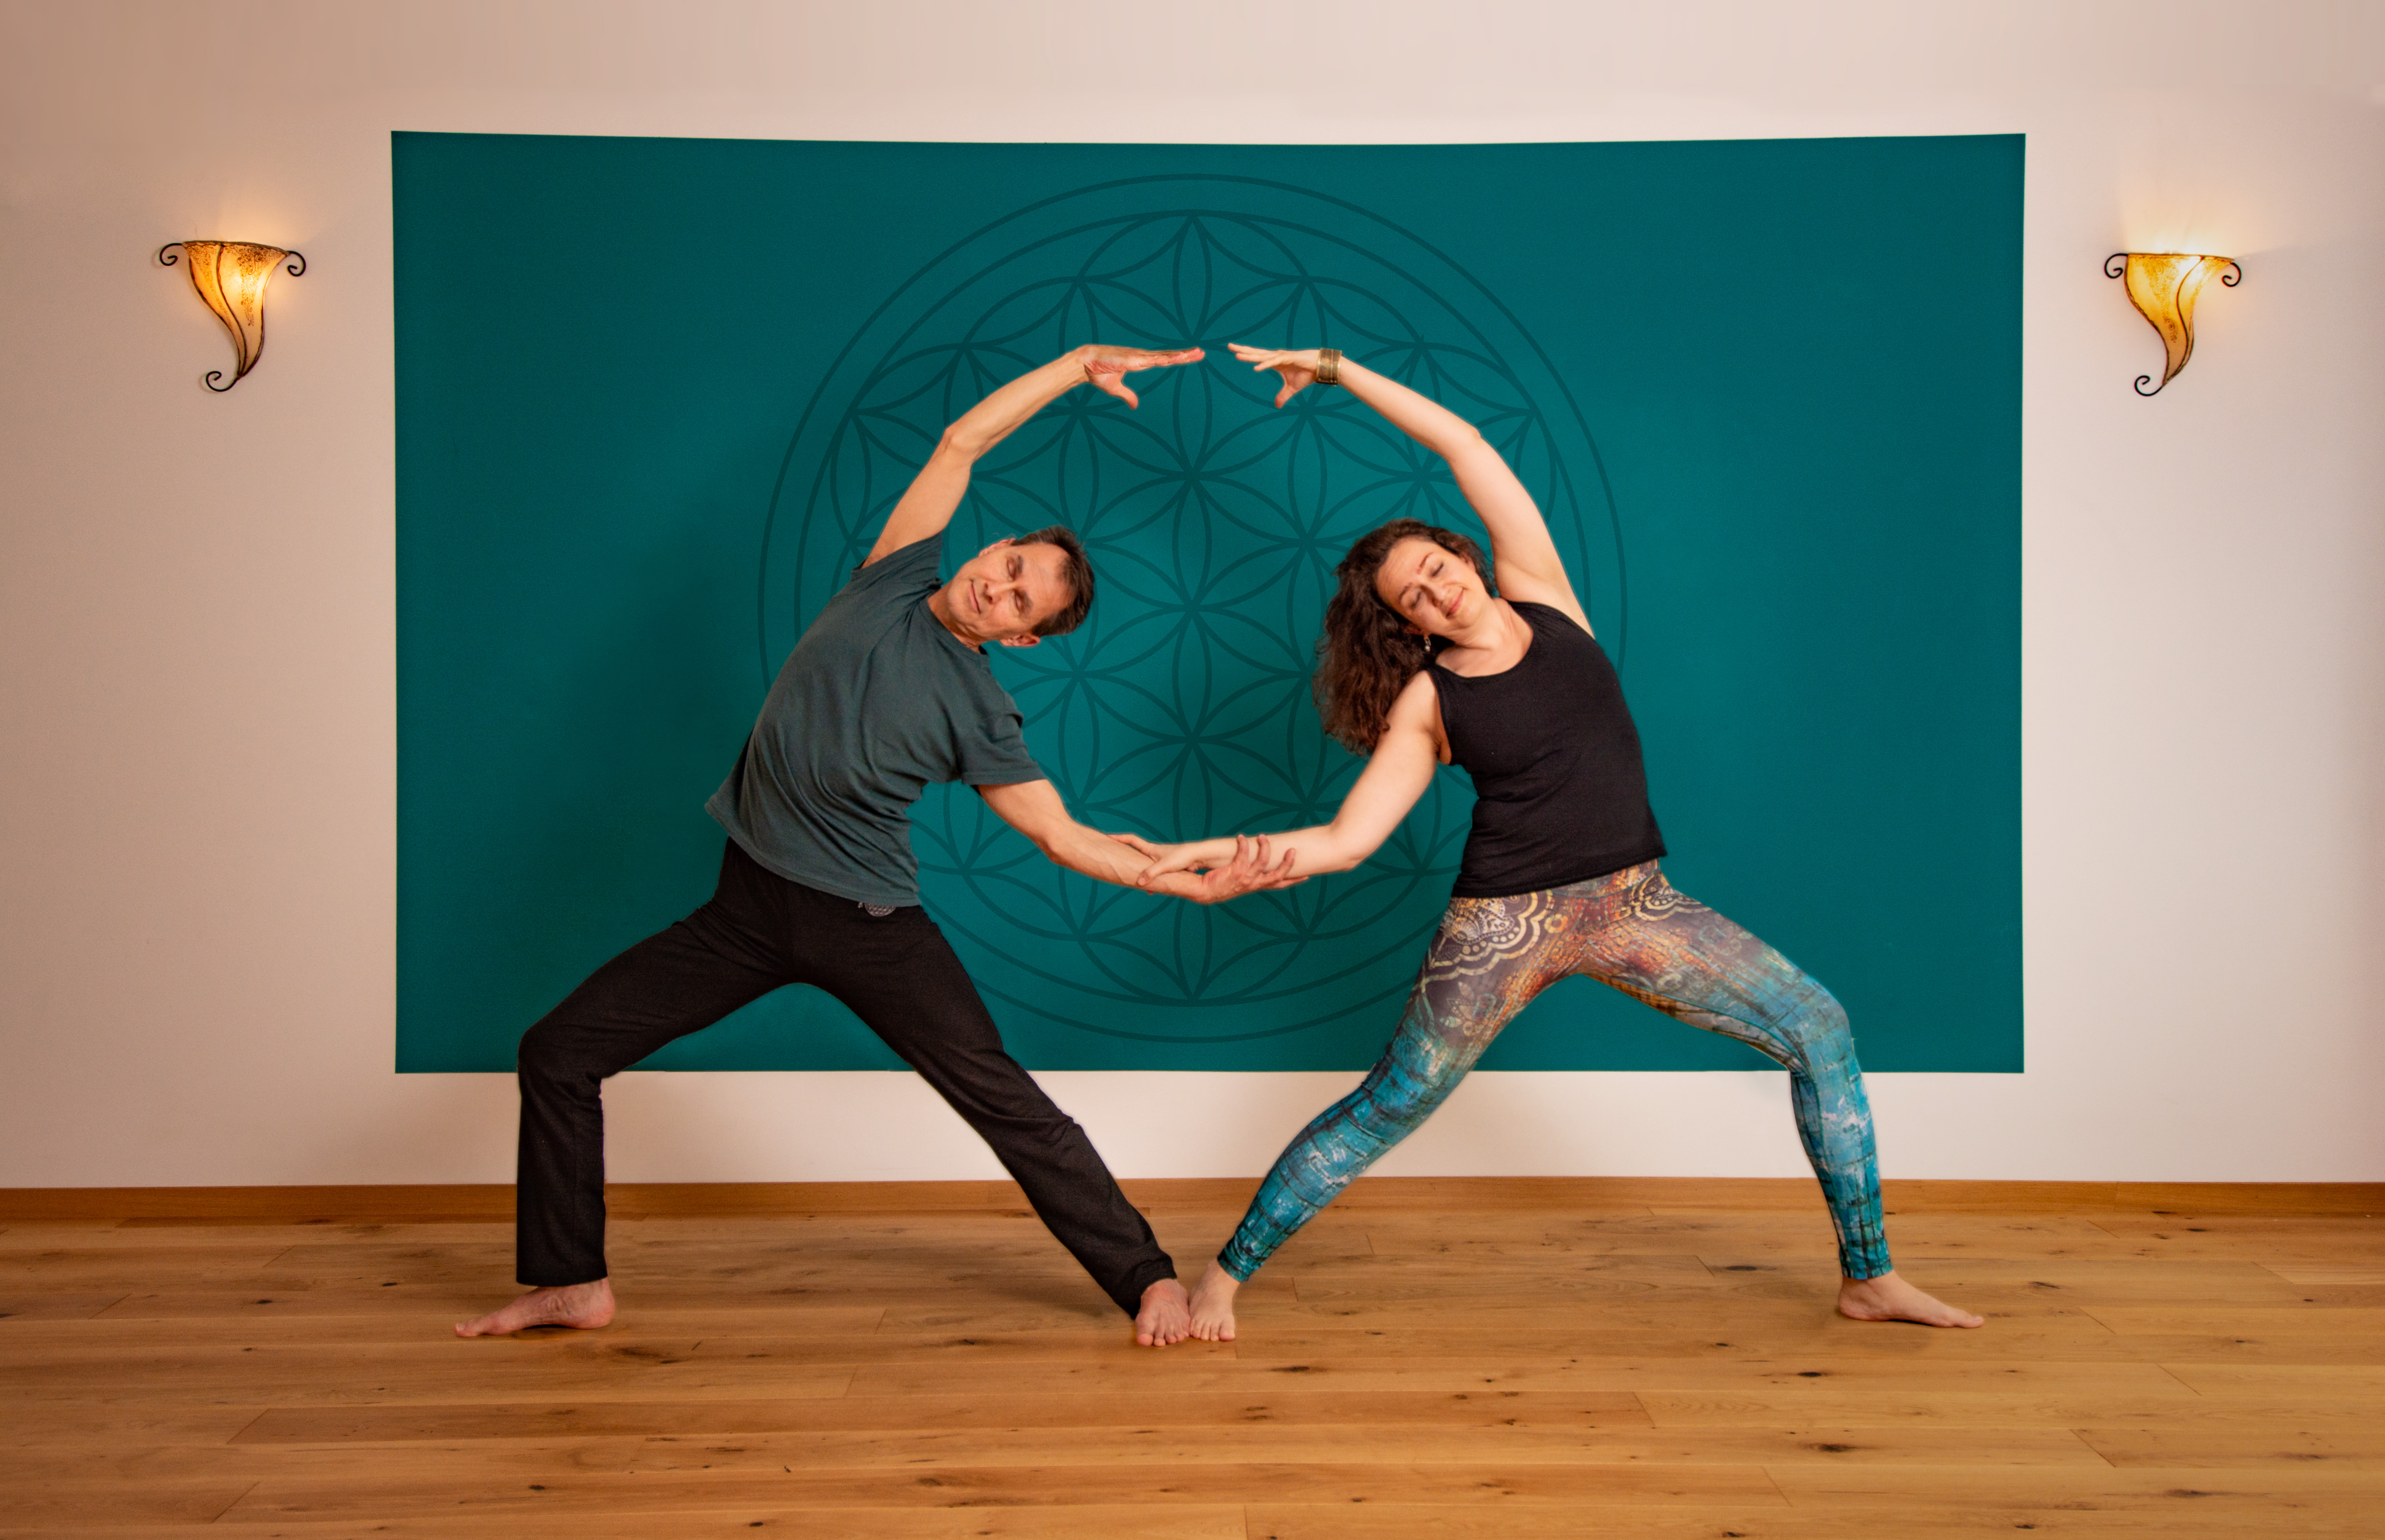 Ausbilderteam jaya yoga
Kai & Afsane 